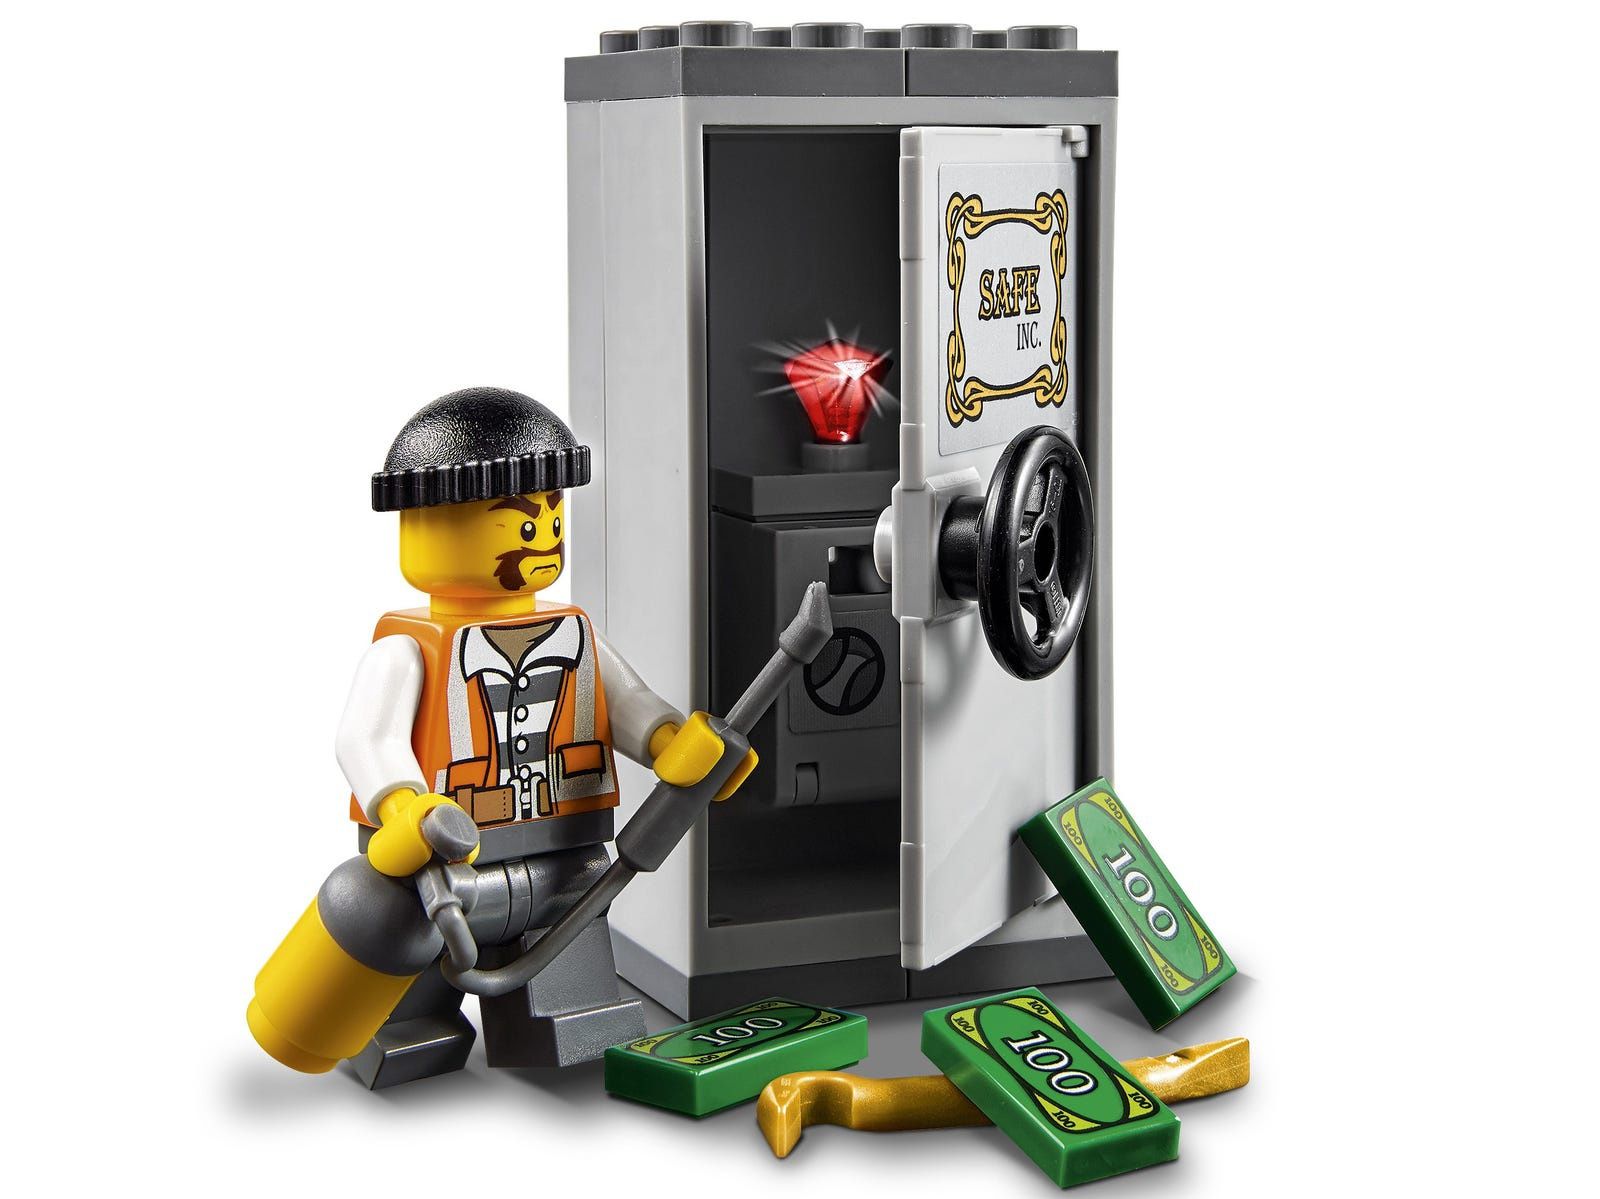 LEGO® 60137 City - Eskorta policyjna kompletny

Motor LEGO policjant z